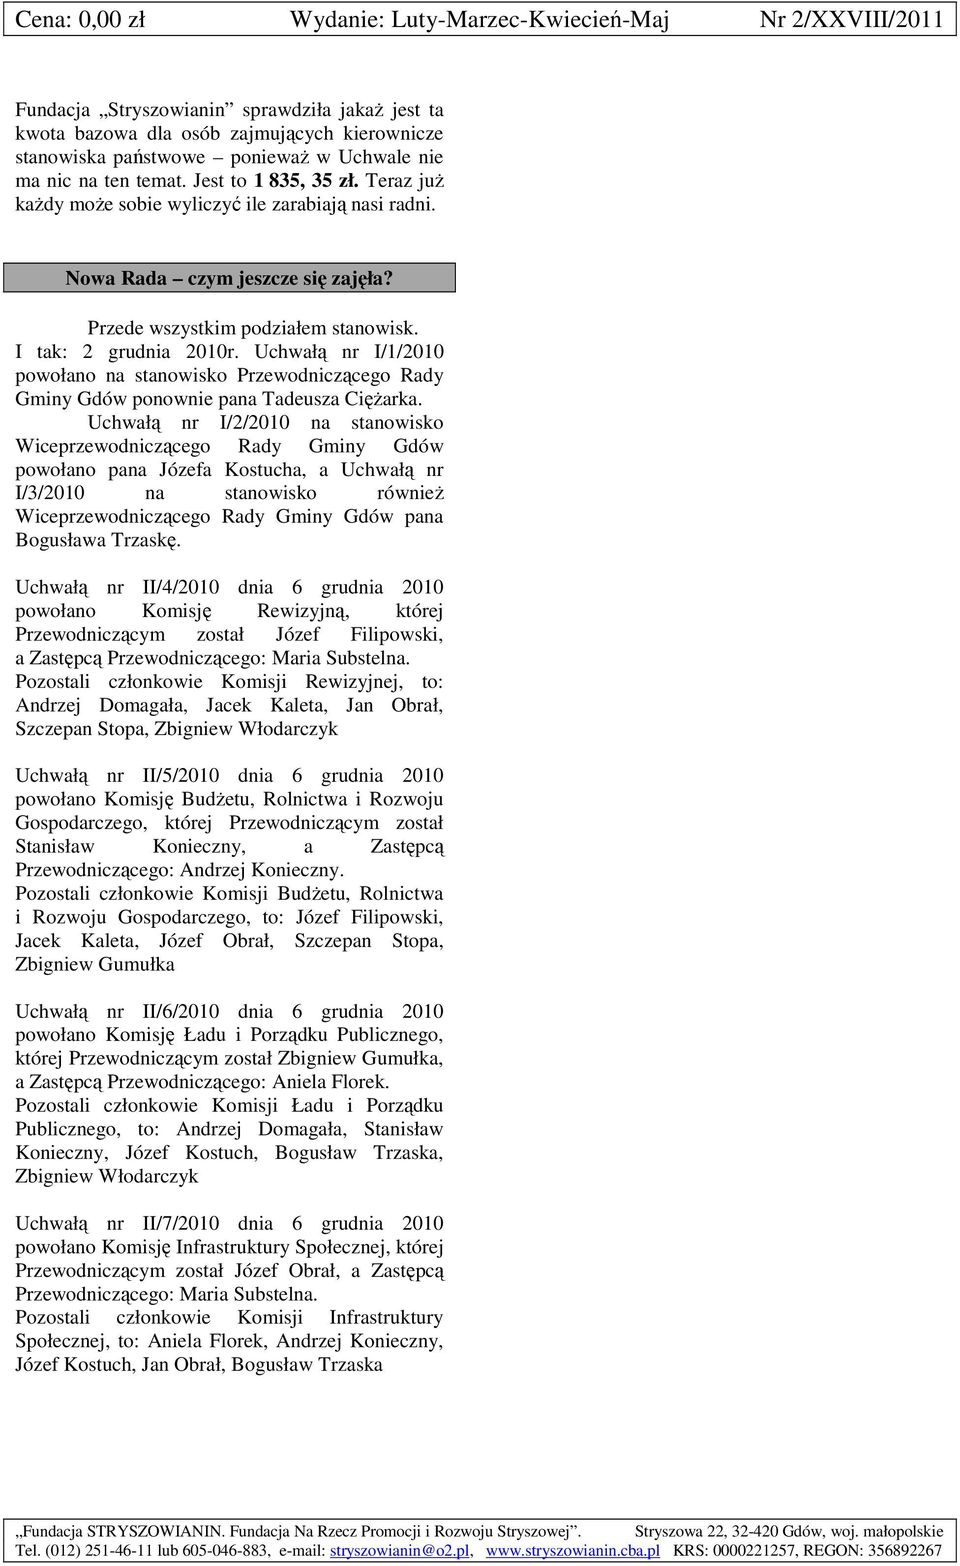 Uchwałą nr I/1/2010 powołano na stanowisko Przewodniczącego Rady Gminy Gdów ponownie pana Tadeusza Ciężarka.